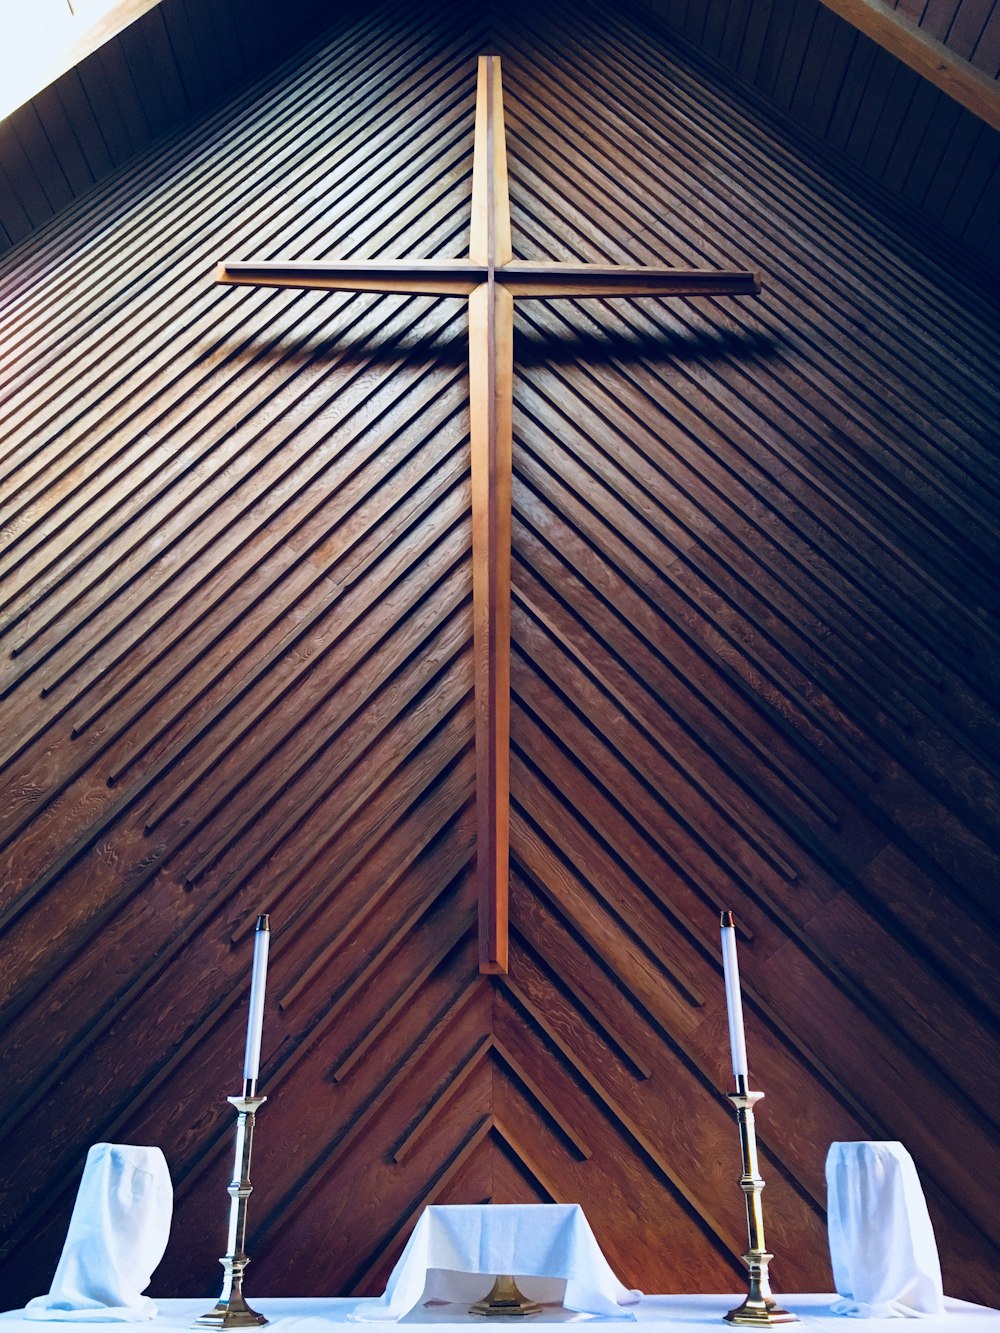 Braunes Kreuz auf dem Altar